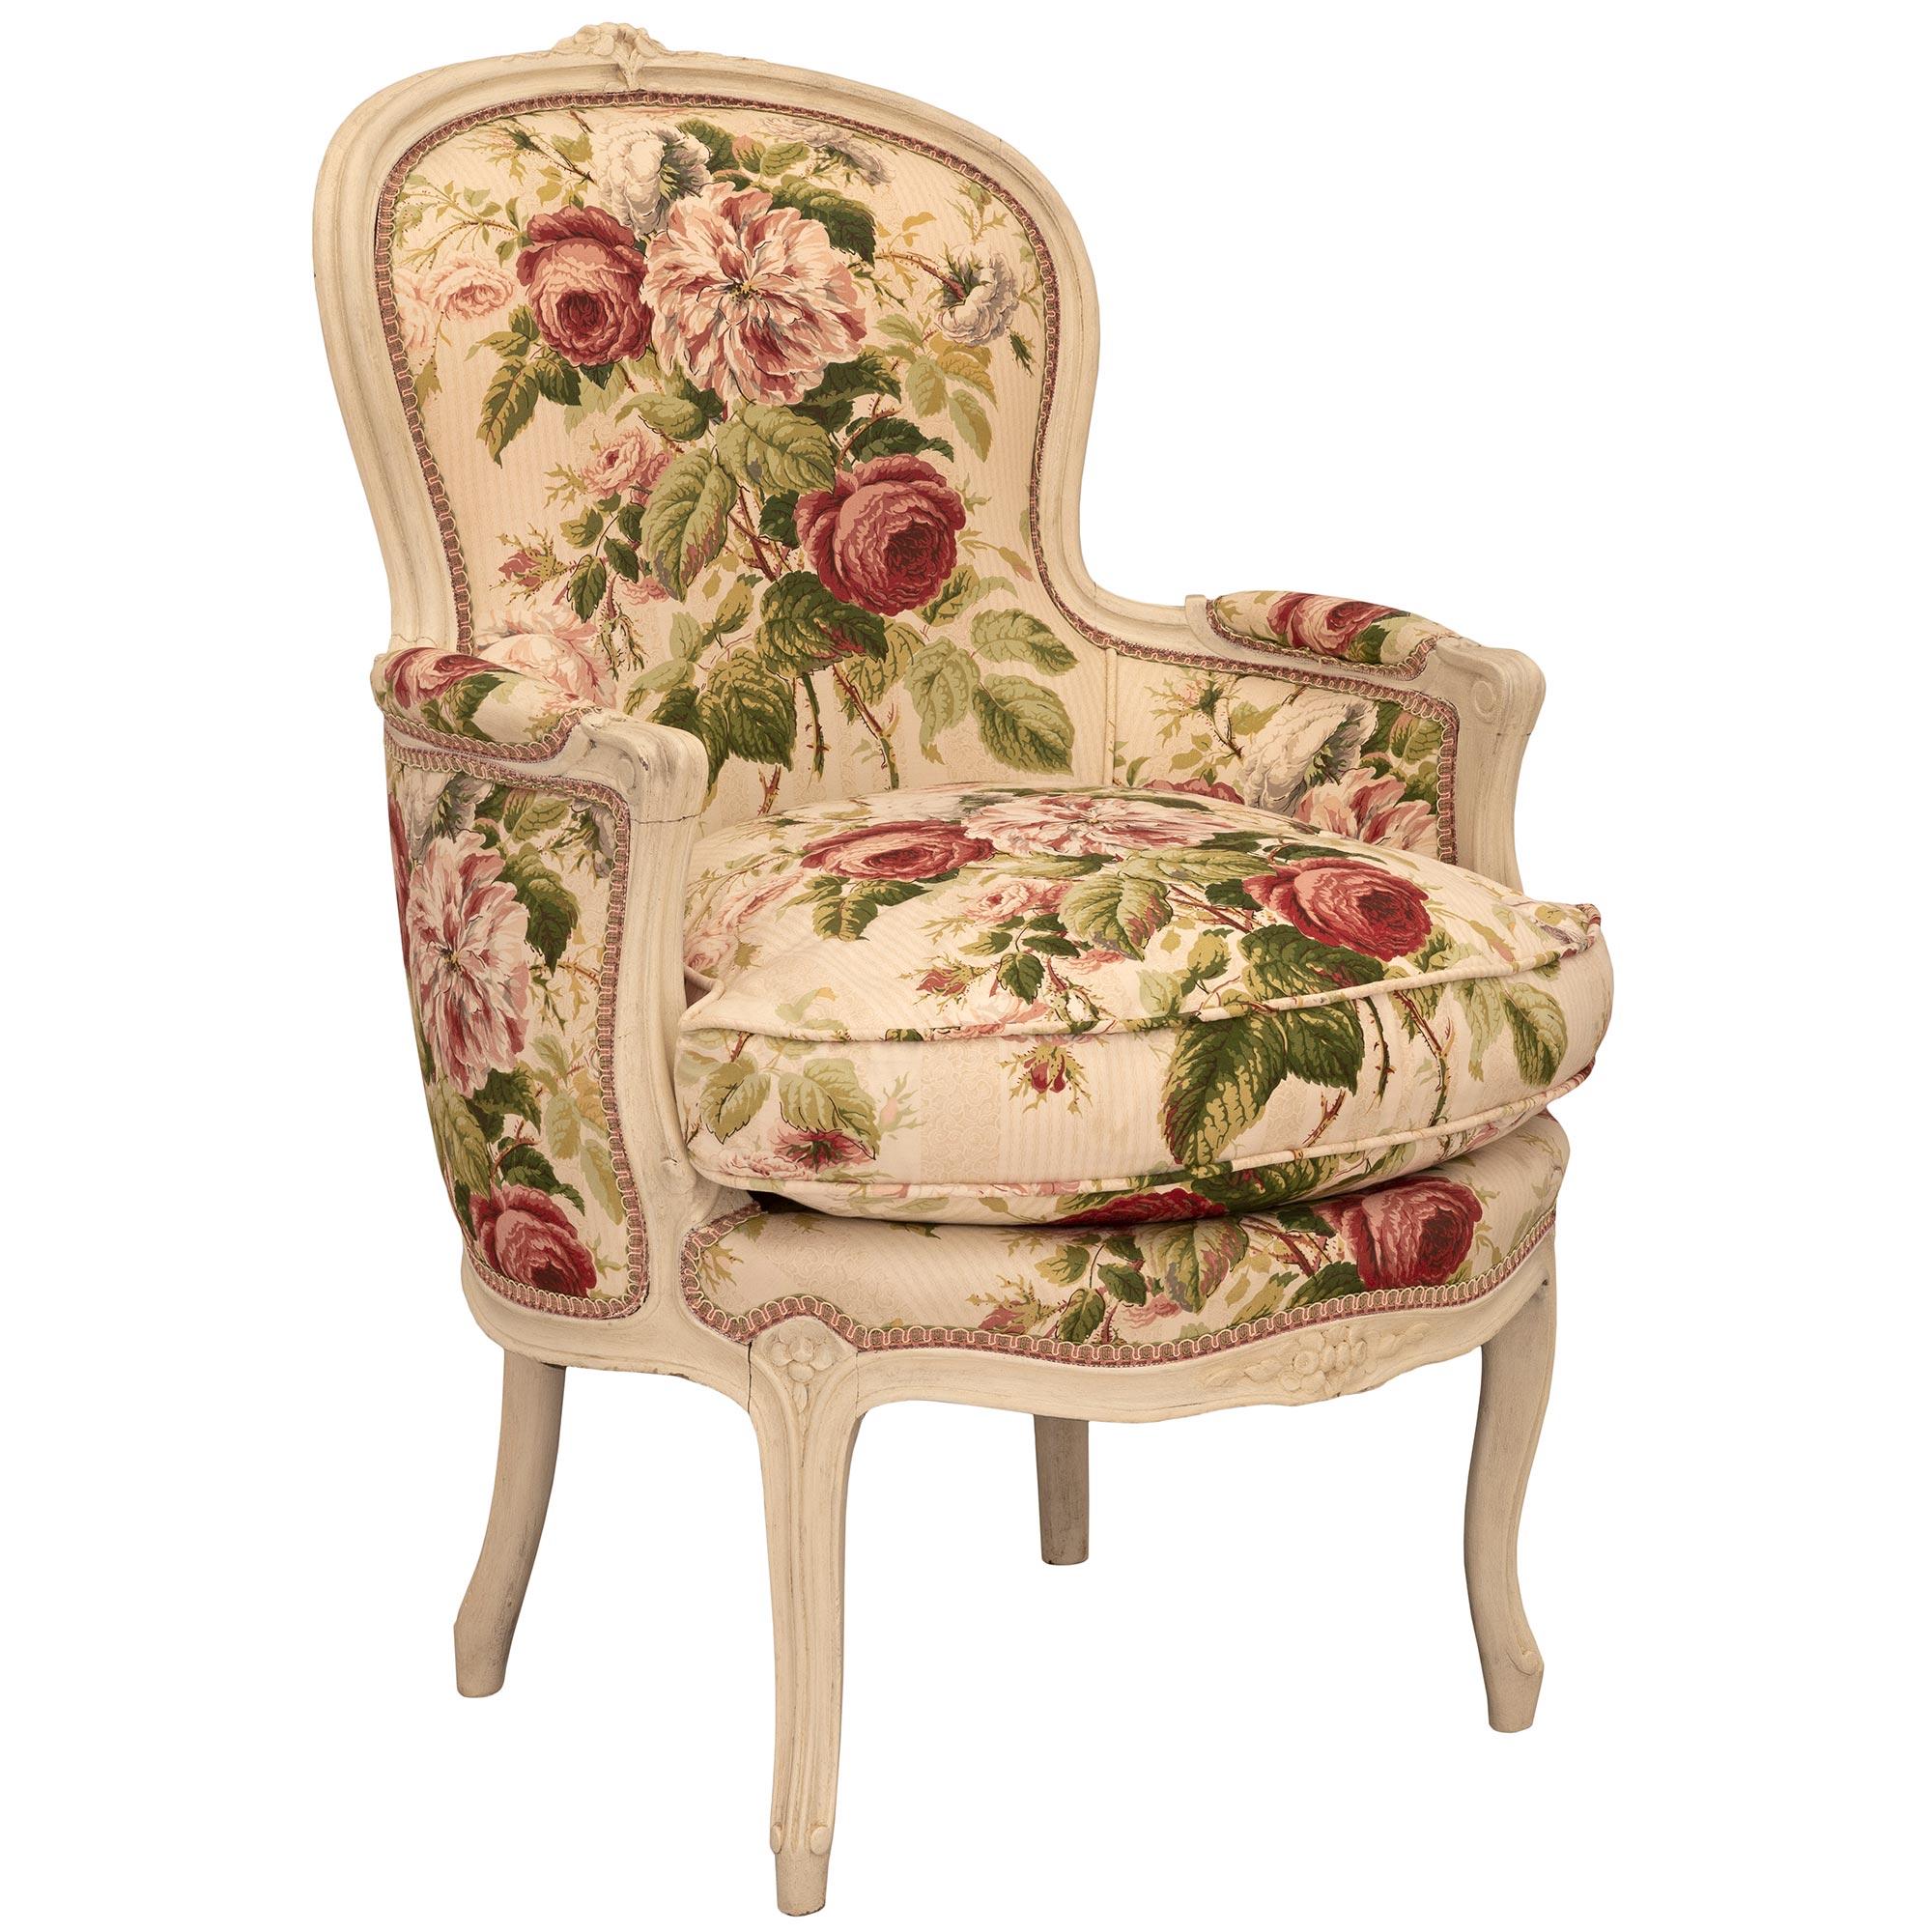 Une belle et très décorative paire de fauteuils français du 19ème siècle en bois patiné de style Louis XV. Chaque chaise est surélevée par d'élégants pieds cabriole avec de jolis filets mouchetés qui remontent le long de chaque pied et le long de la